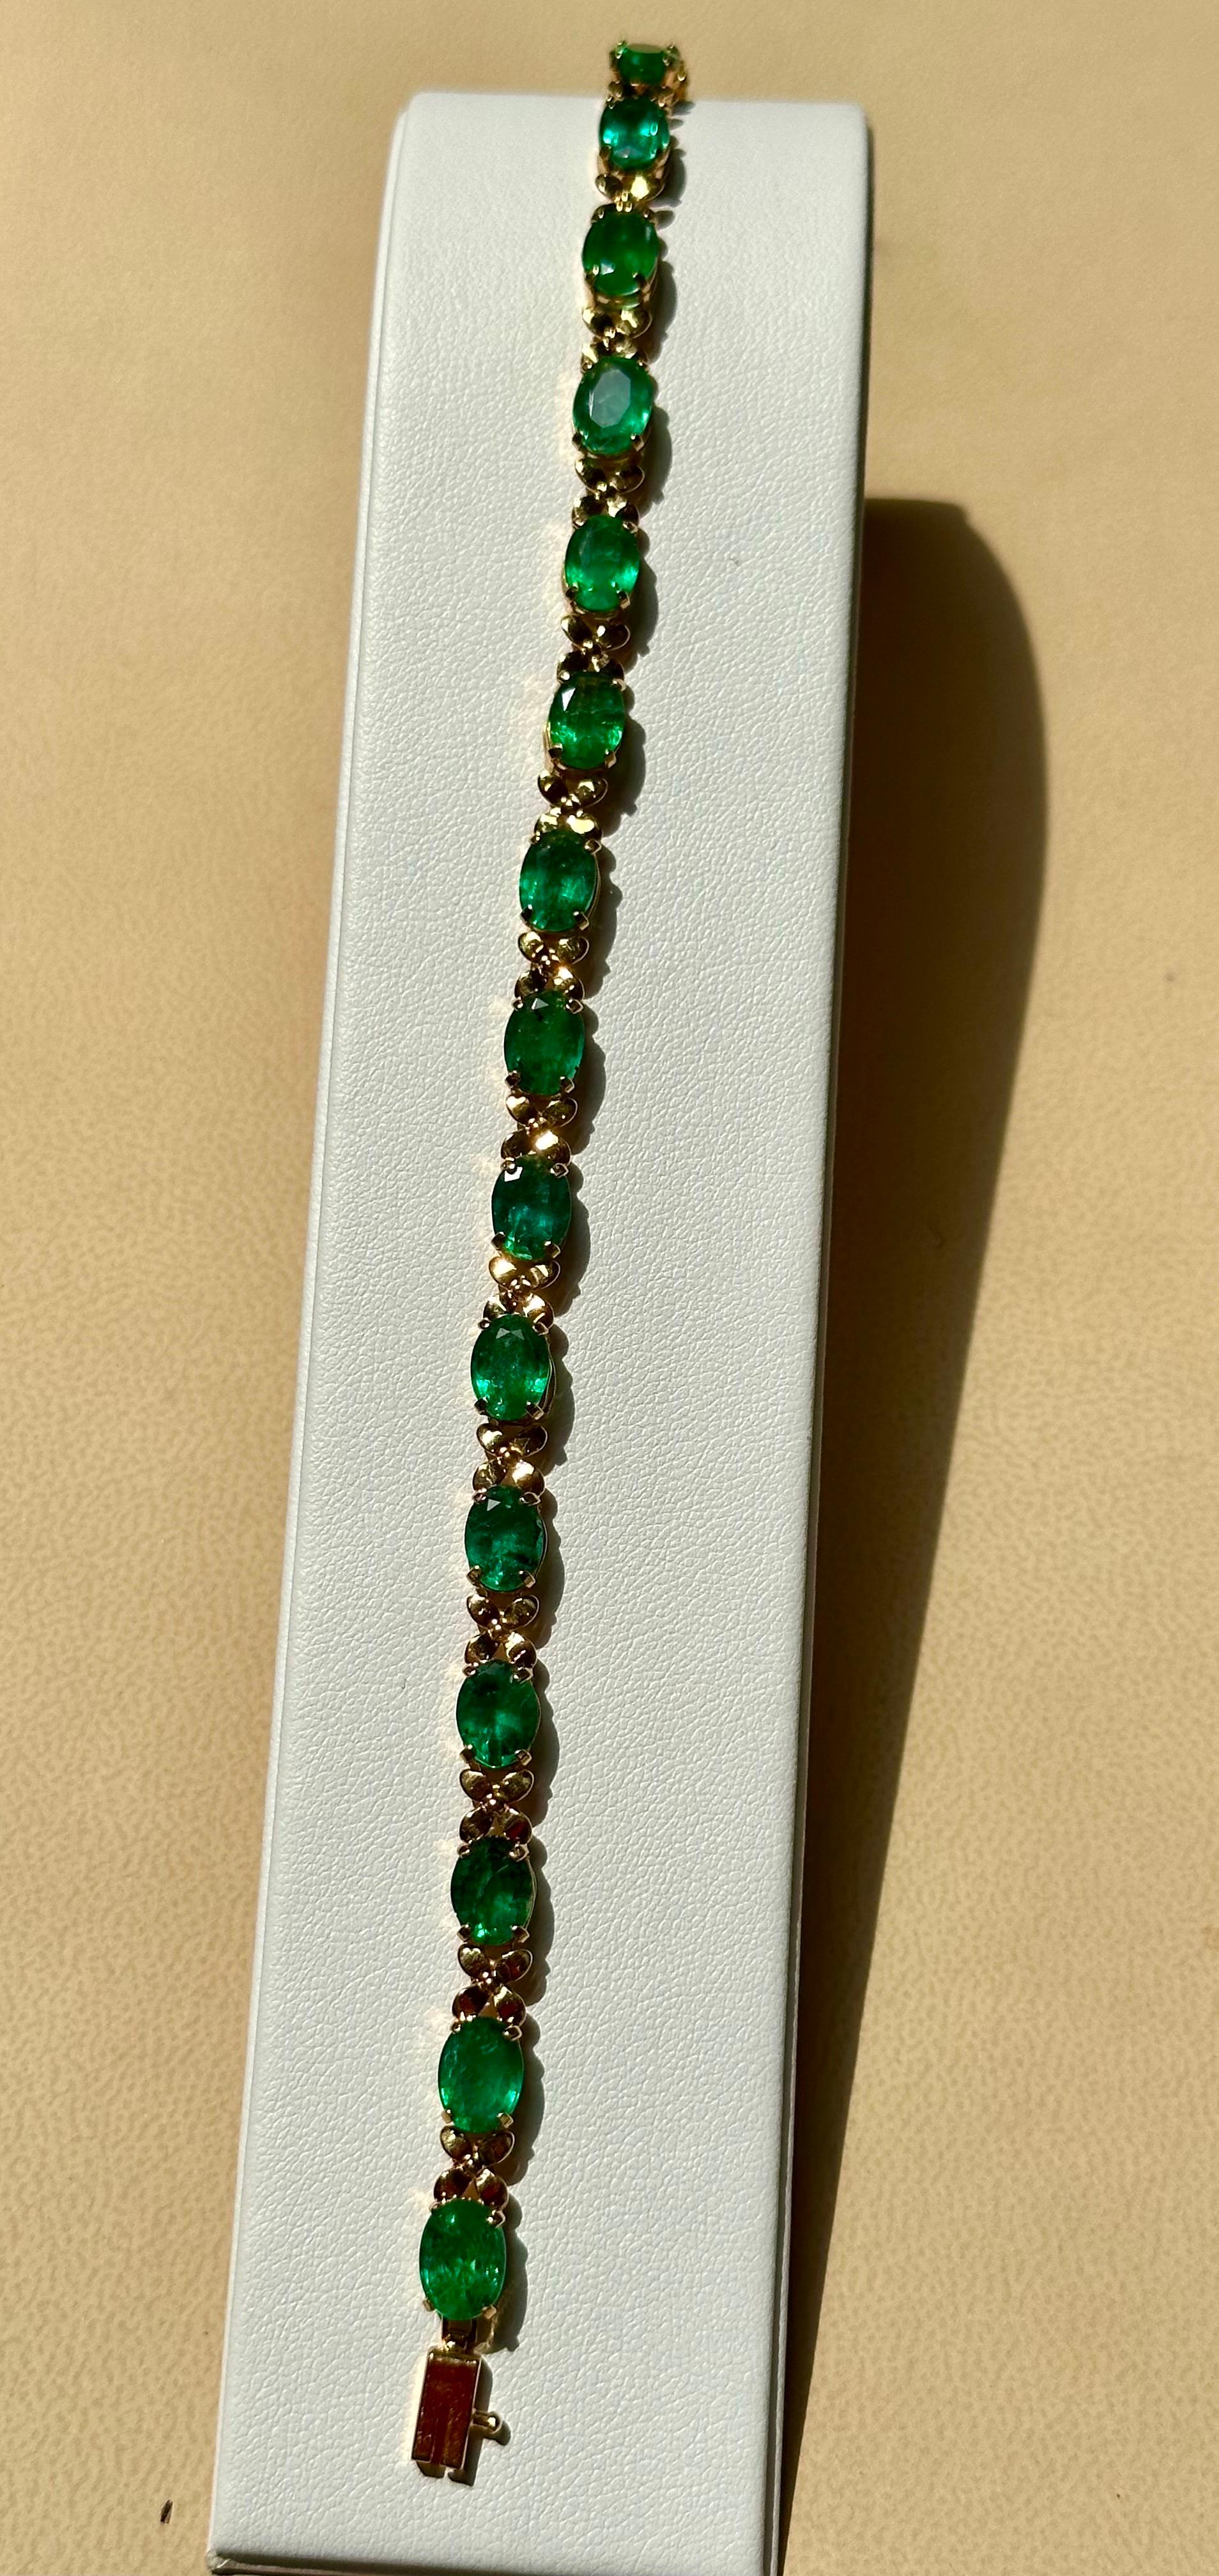  Dieses außergewöhnlich günstige Tennis  Armband hat  15  Steine aus Oval  Smaragde  .  Das Gesamtgewicht der Smaragde beträgt  etwa 23 Karat. 
Das Armband ist fachmännisch gefertigt mit 11  Gramm  14 Karat Gelb  Gold . Sie haben einen